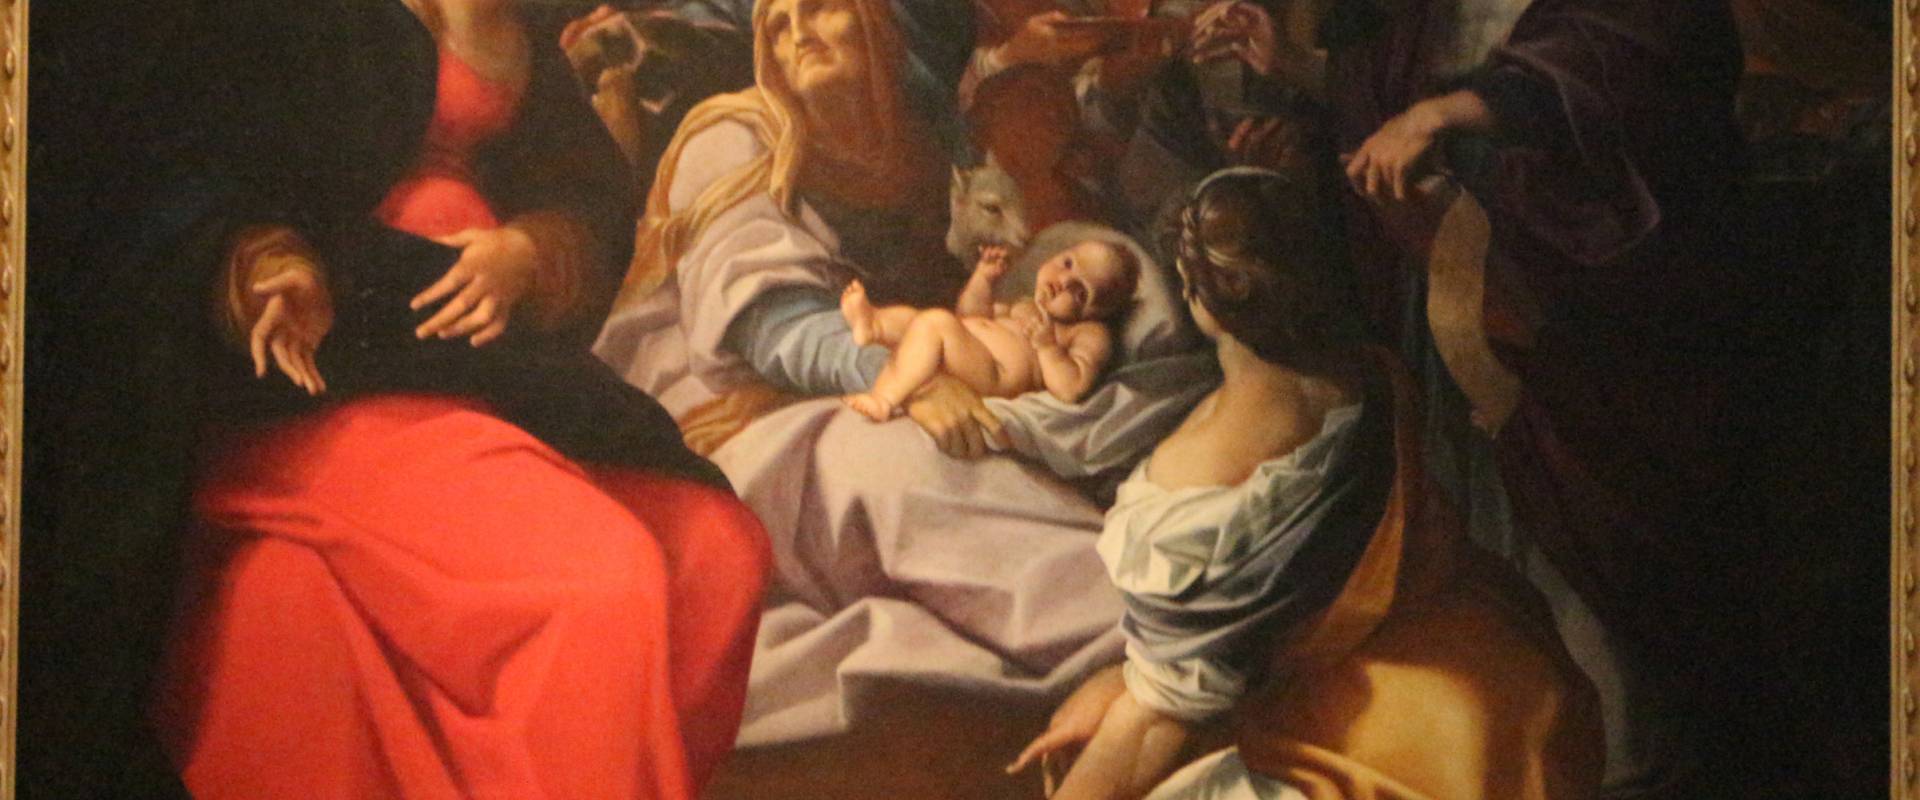 Ludovico carracci, nascita del battista, 1603, da s. giovanni battista 02 photo by Sailko